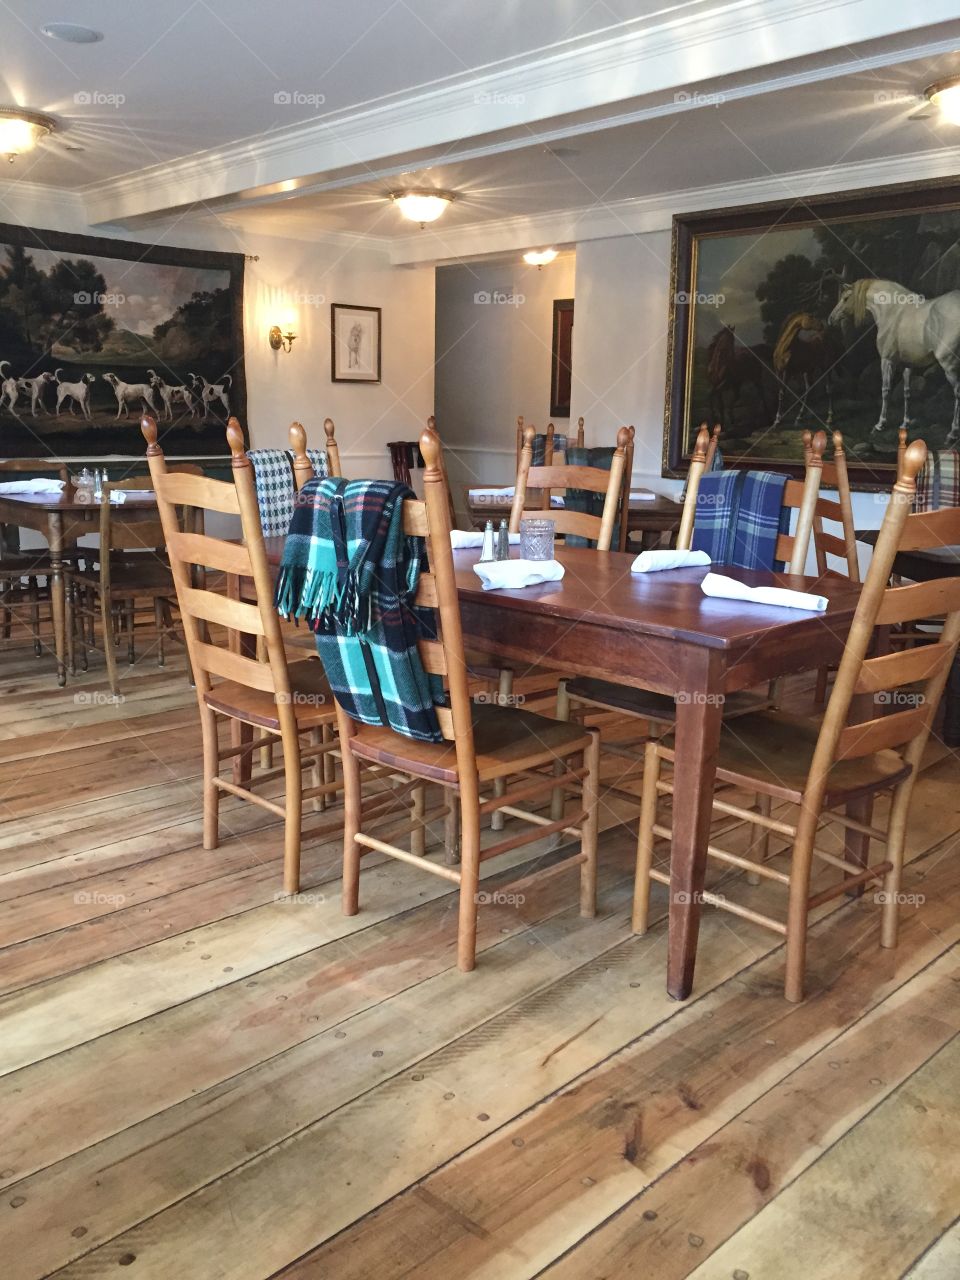 White Horse Inn. Historic Metamora, MI landmark reopened